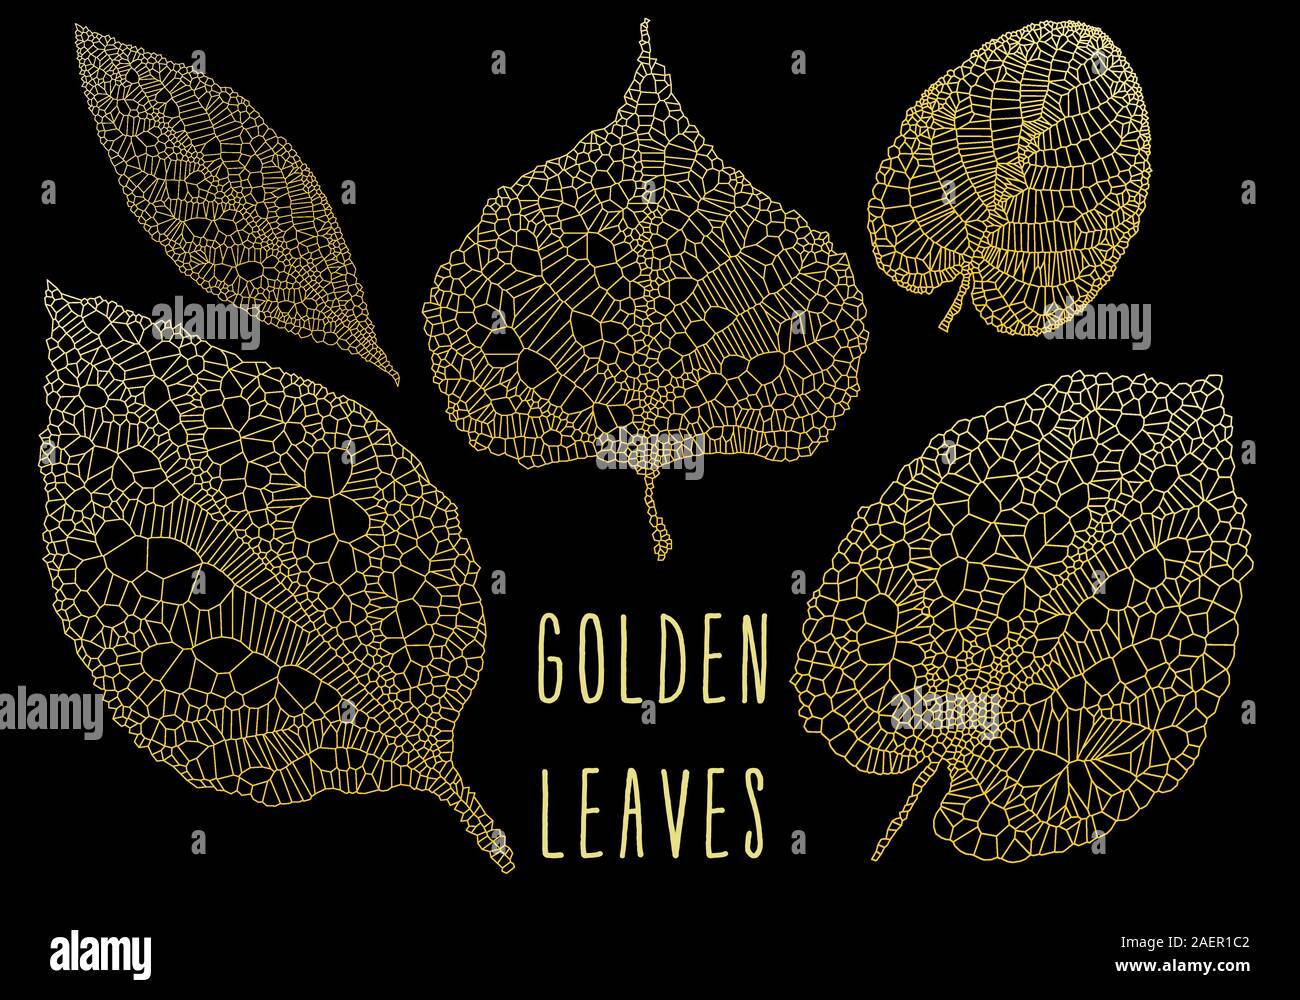 Veine d'or, l'or des feuilles feuille squelette, ensemble d'éléments de conception vectorielle sur fond noir Illustration de Vecteur